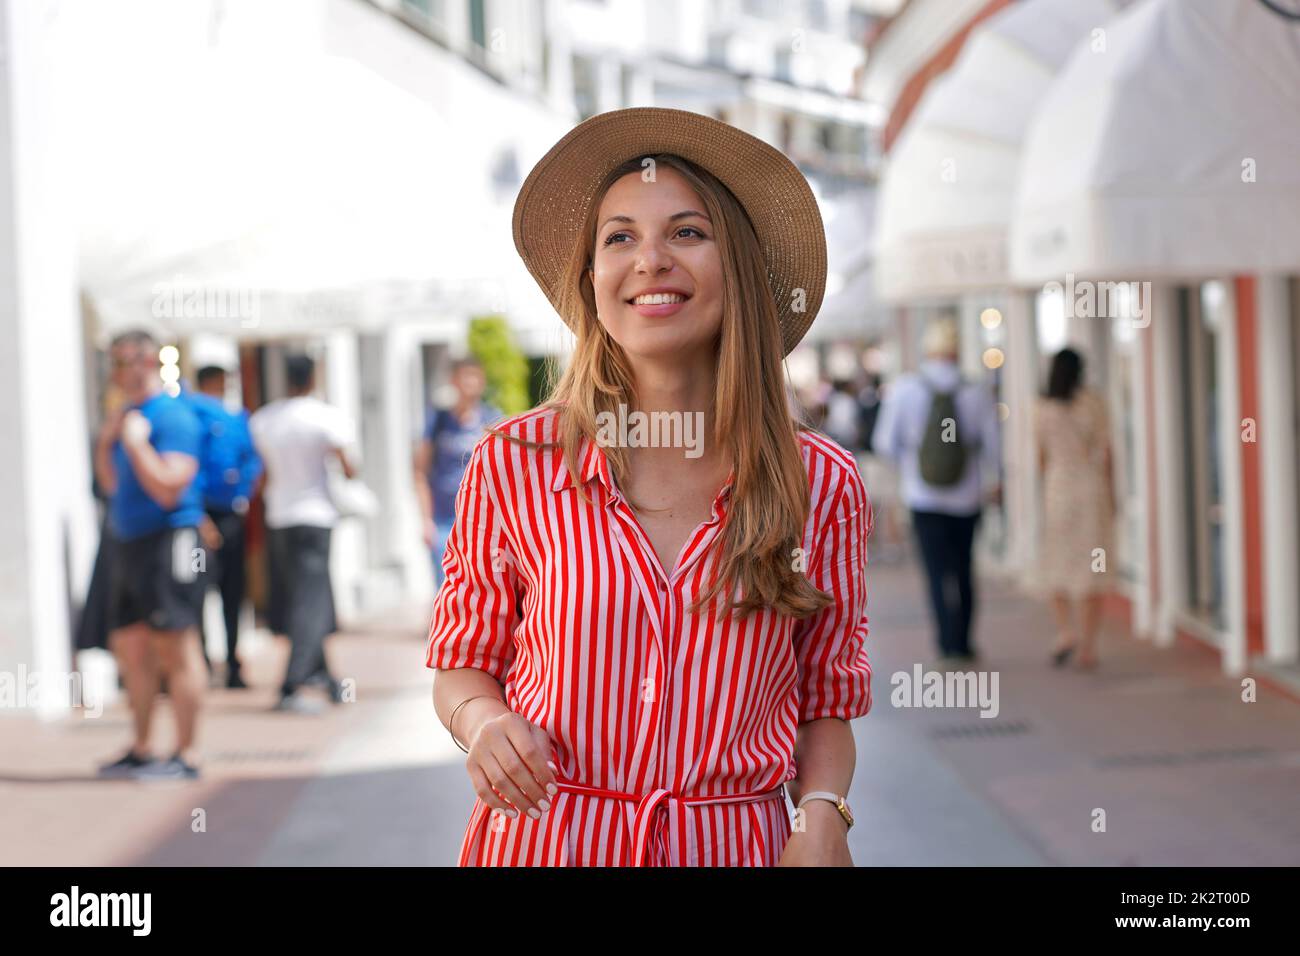 Junge Mode-Beauty-Frau, die in der Mode-Straße von Capri spazieren geht, sieht auf der Insel Capri, Italien, zur Seite Stockfoto